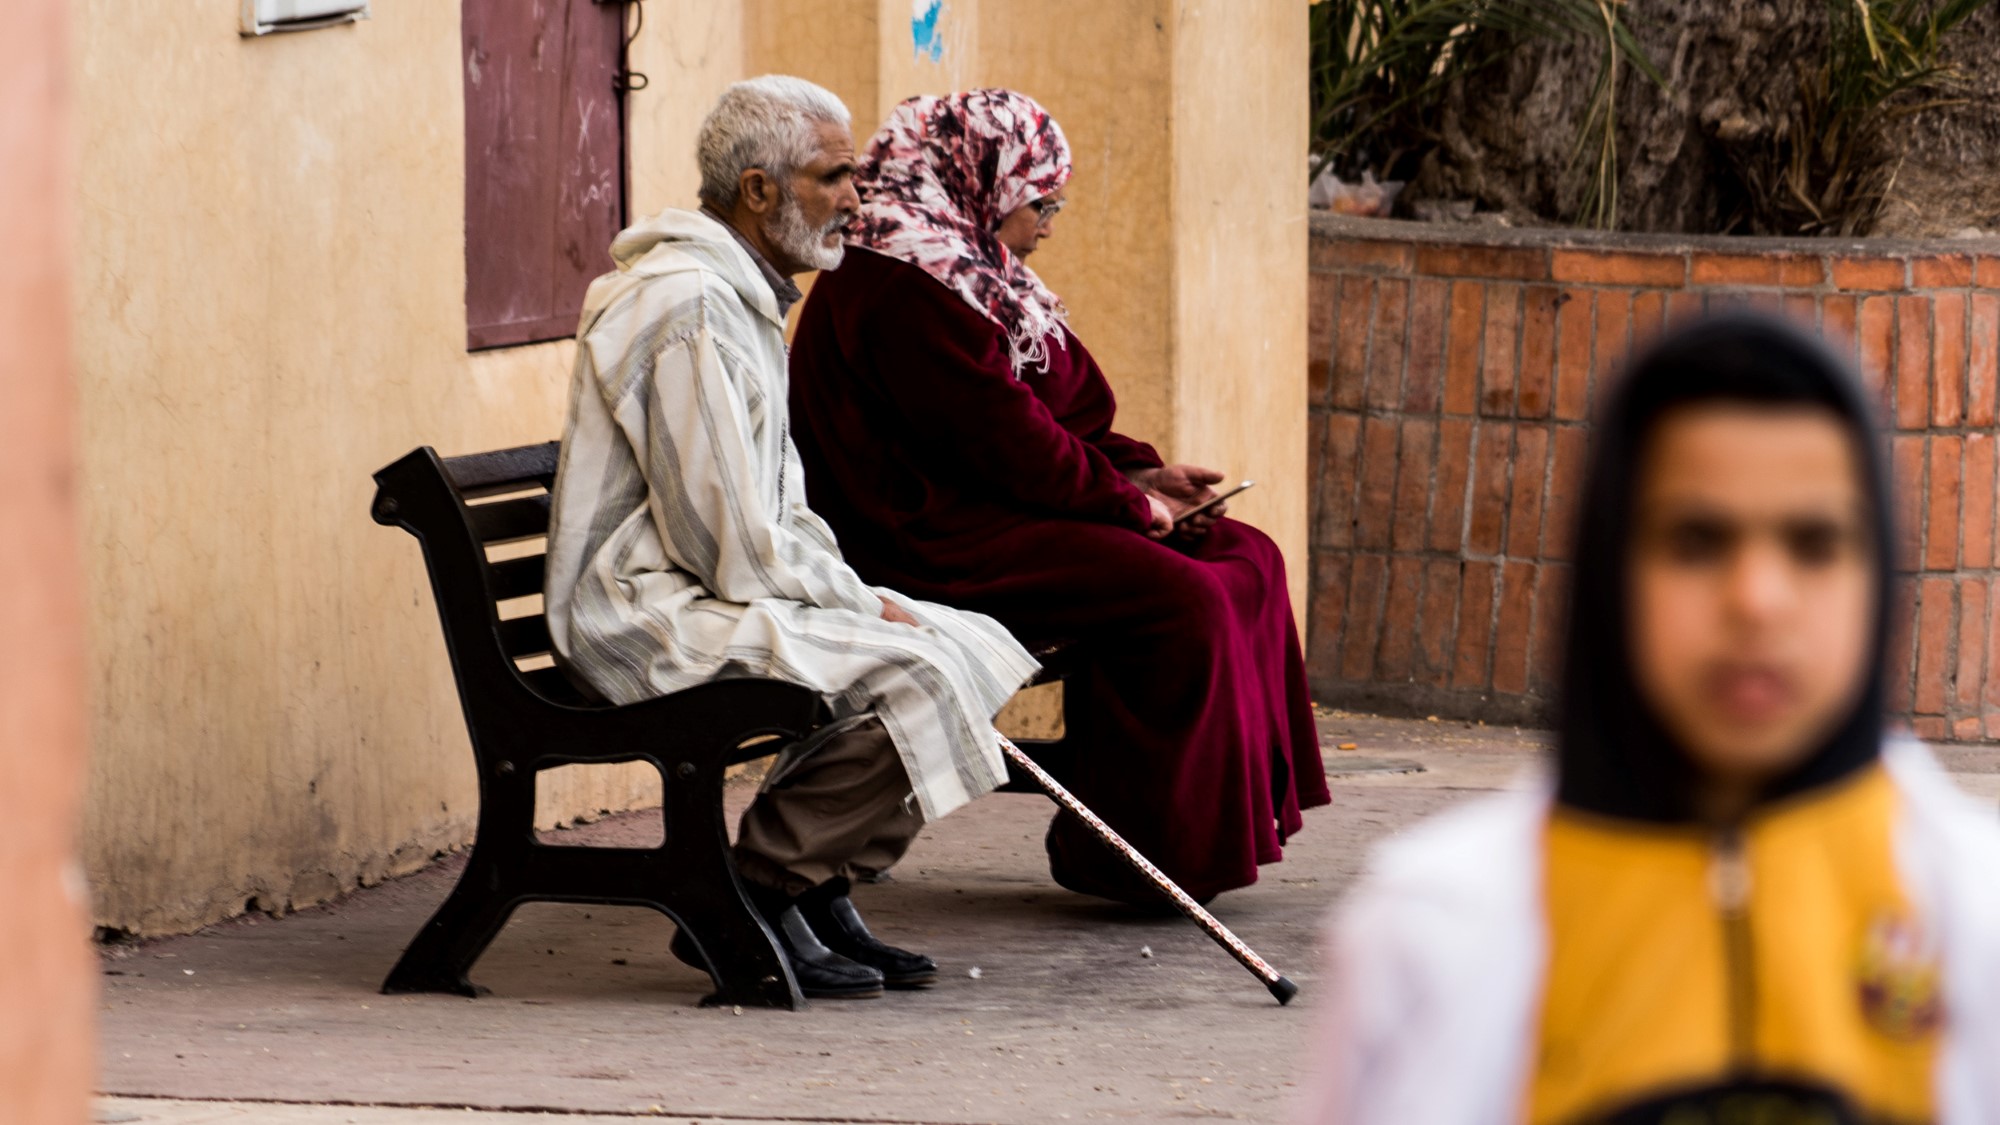 Eldre mann med krykke og eldre kvinne på benk. Ung kvinne i forgrunnen